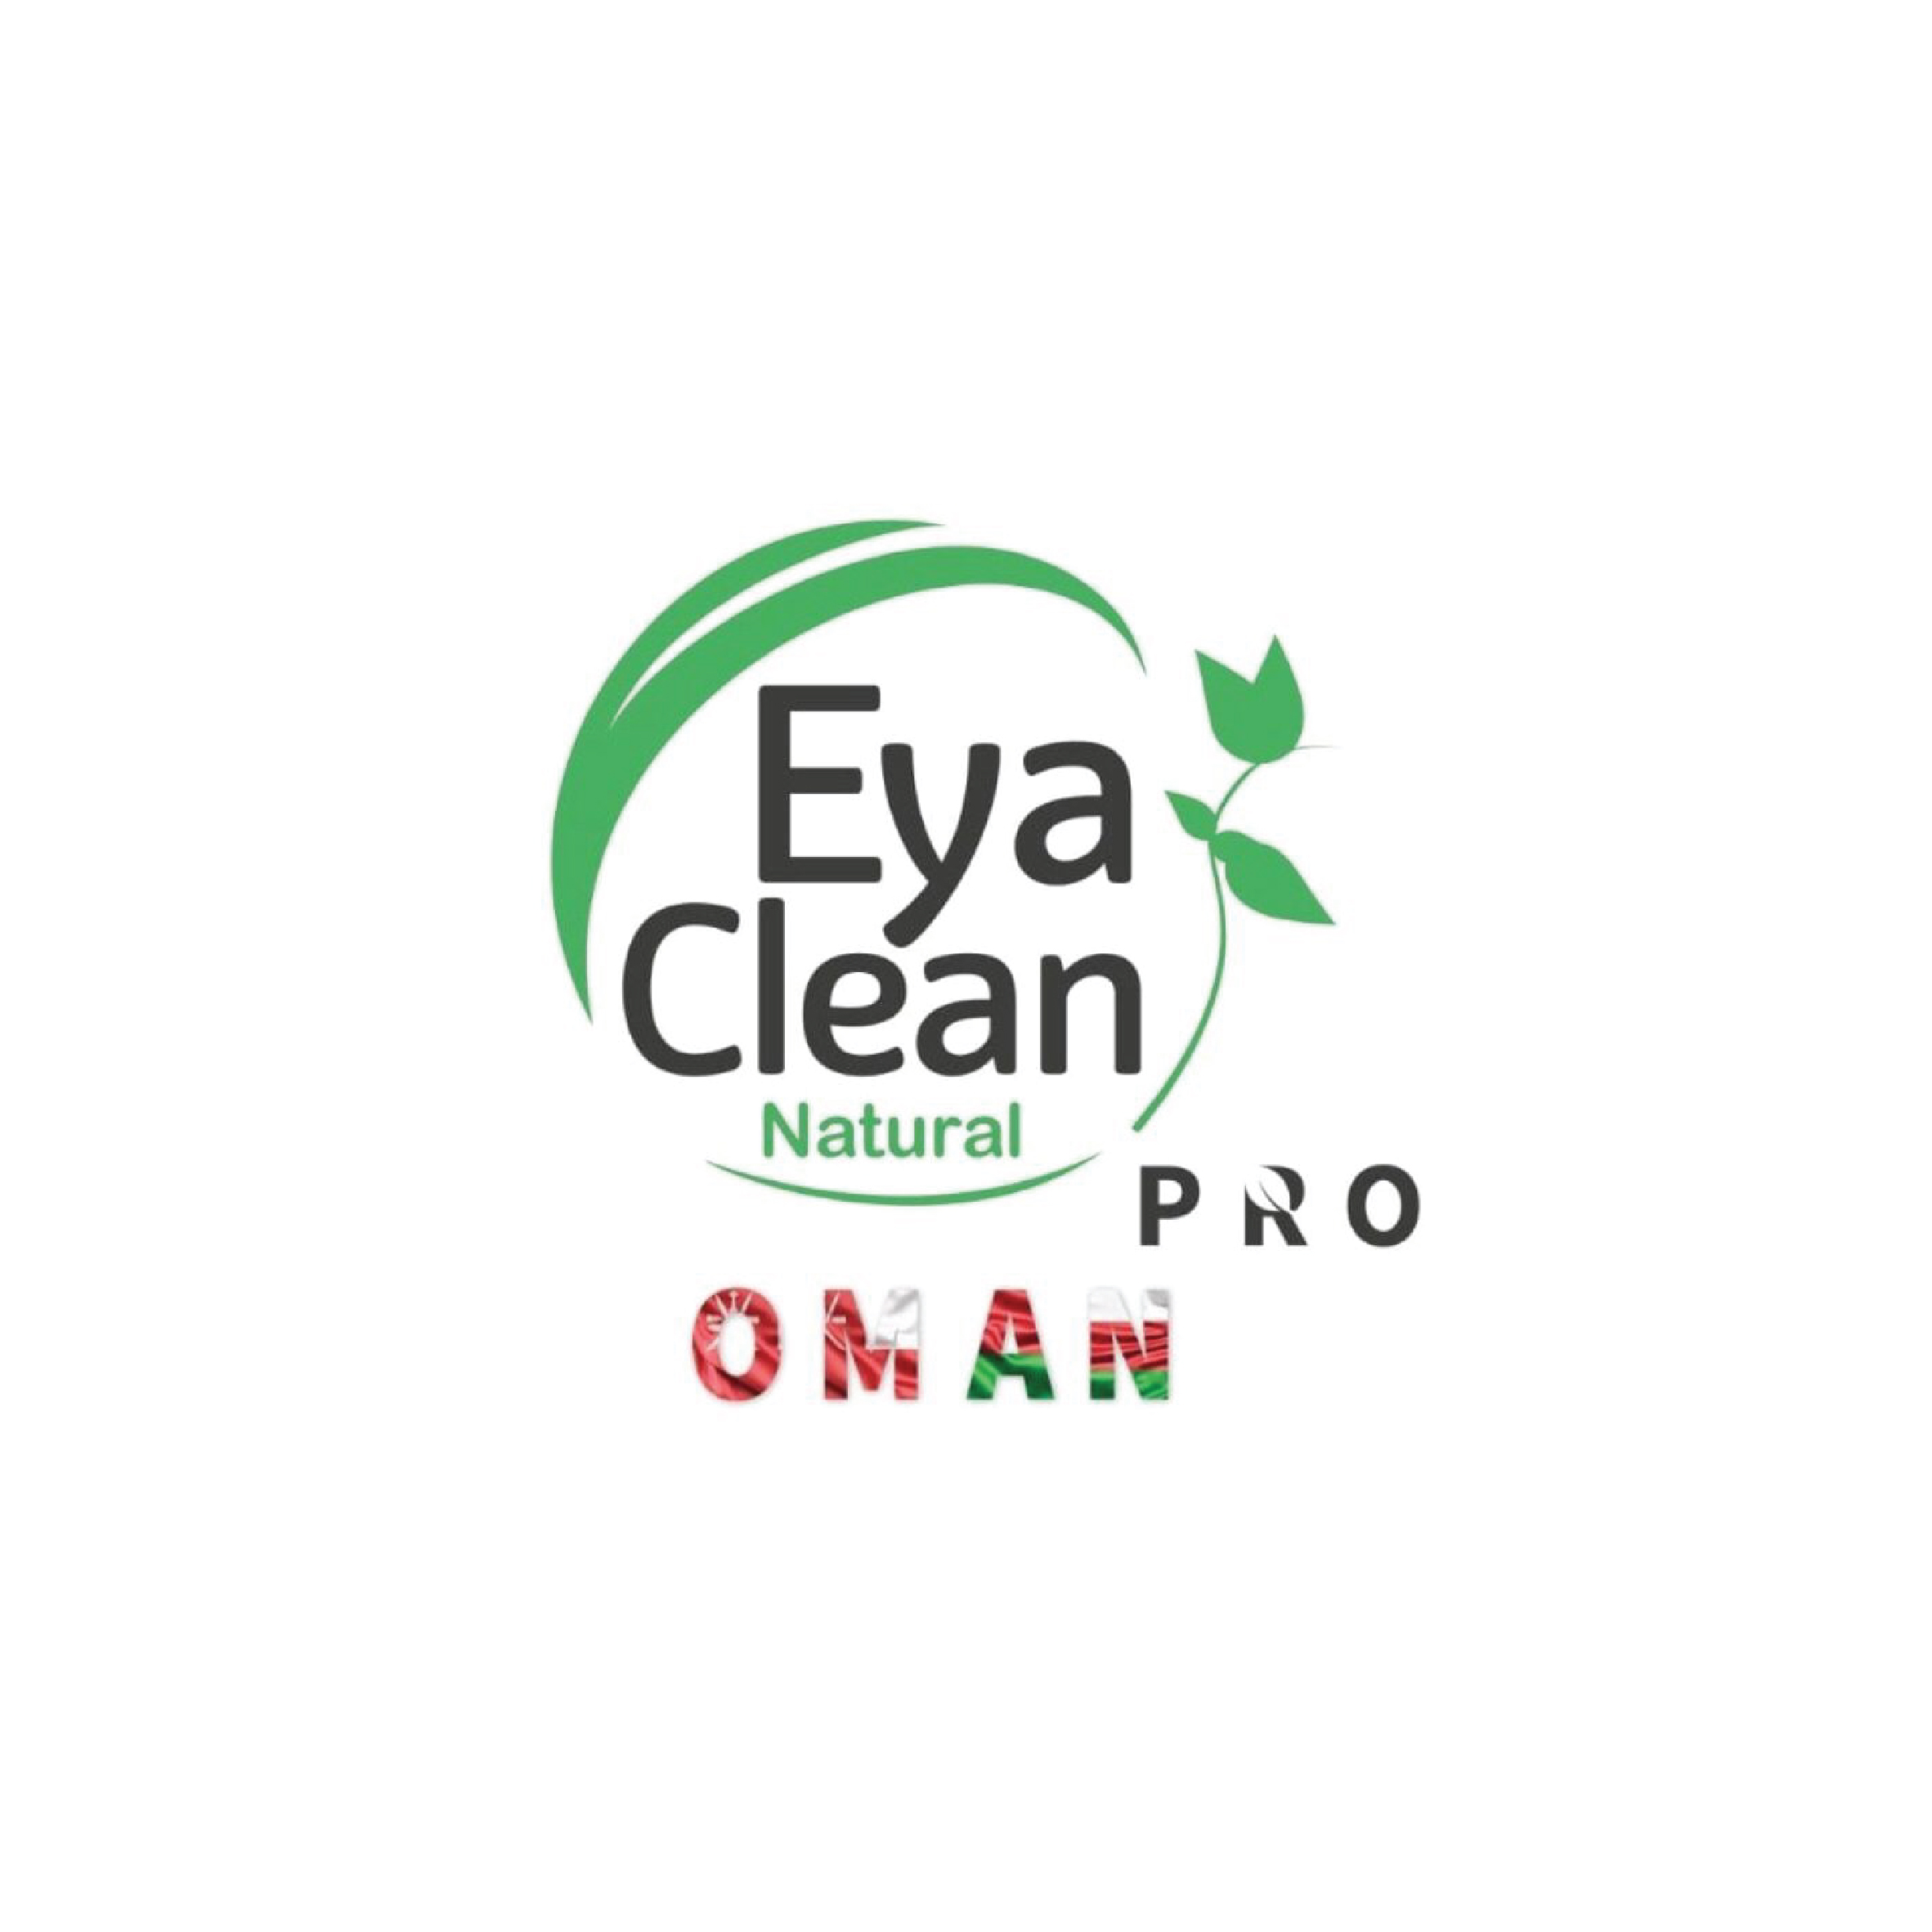 Eya Clean Pro